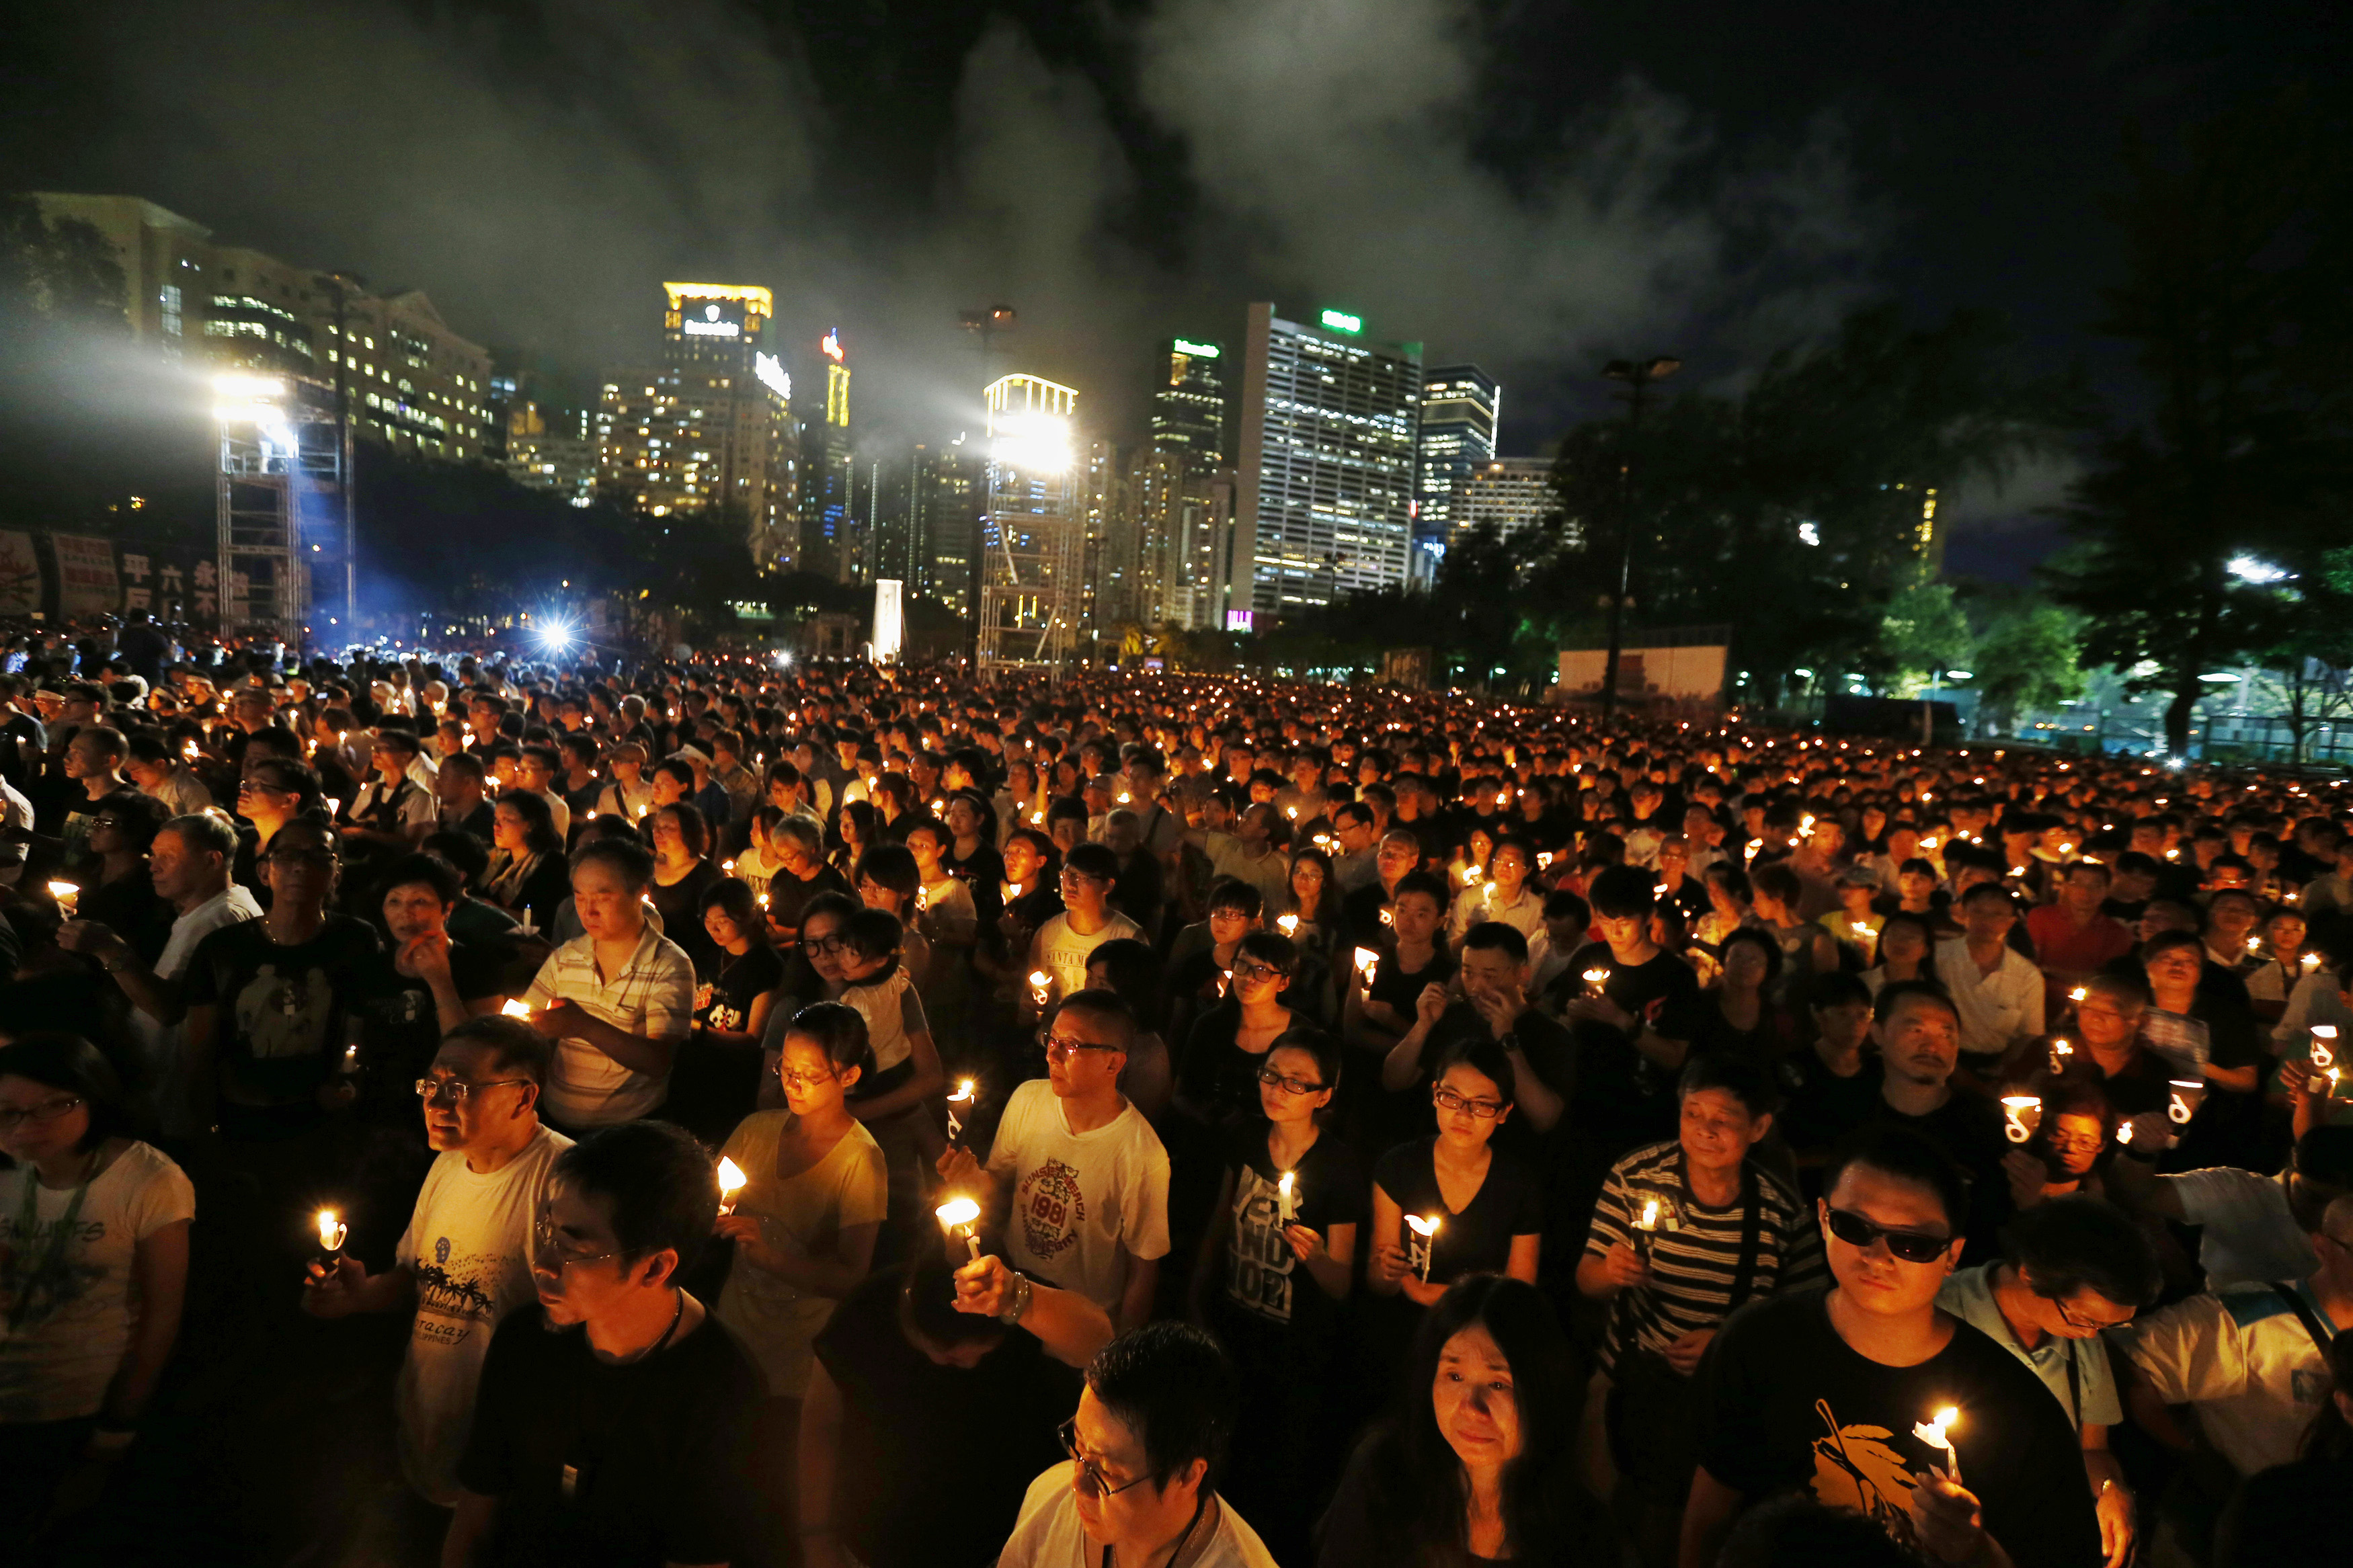 Des dizaines de milliers de personnes participent à une vigile silencieuse aux chandelles au parc Victoria de Hong Kong le 4 juin 2014, pour souligner le 25e anniversaire de la répression militaire qui s'est abattue à Beijing